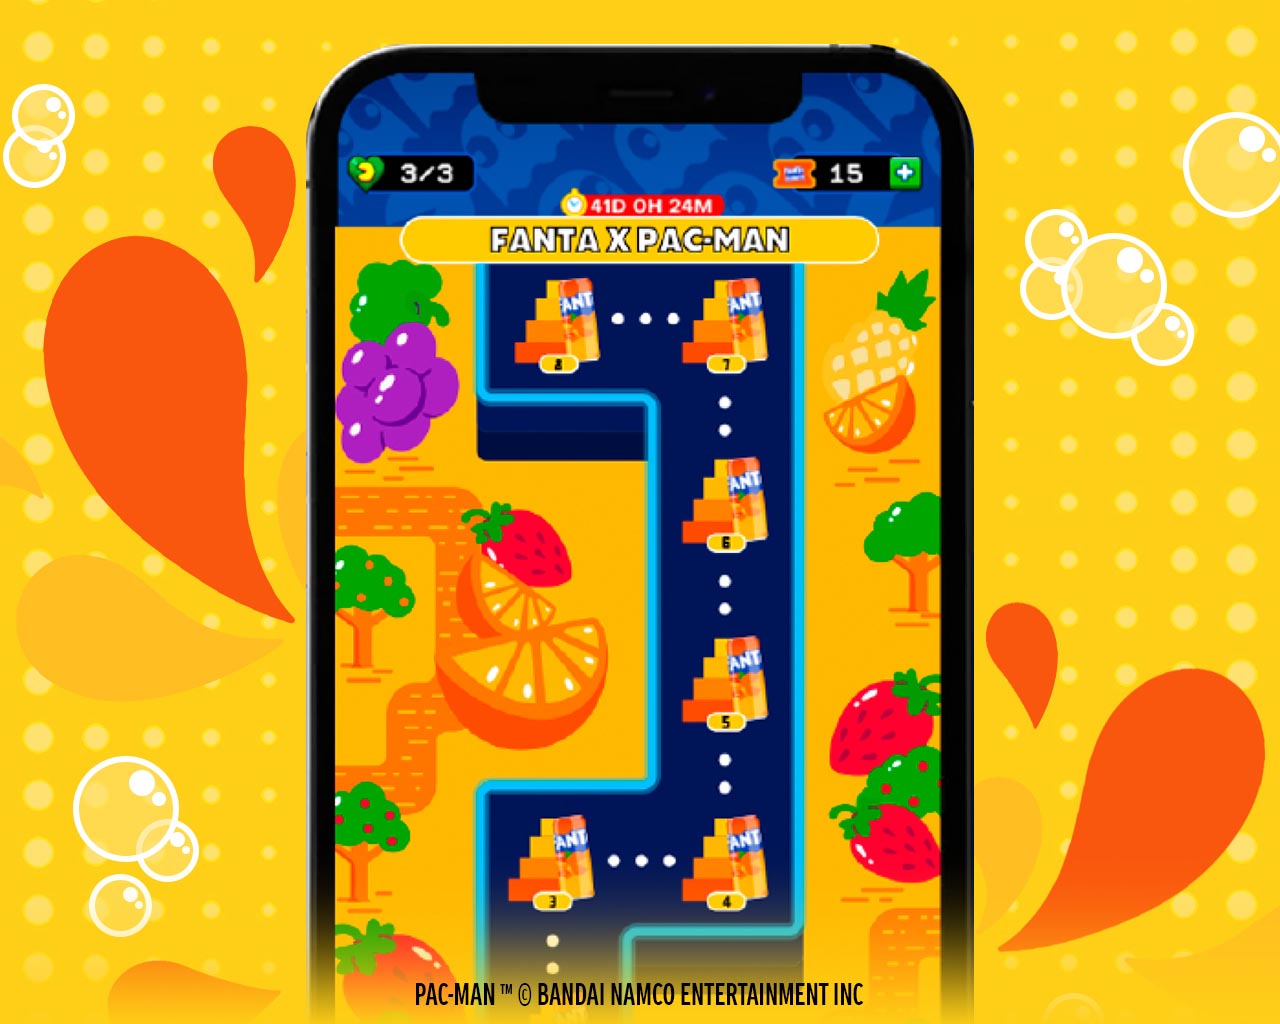 Interfaz del juego para celulares Android y I-Phone de Country Club que muestra un nivel del laberinto con frutas y los fantasmas de colores.